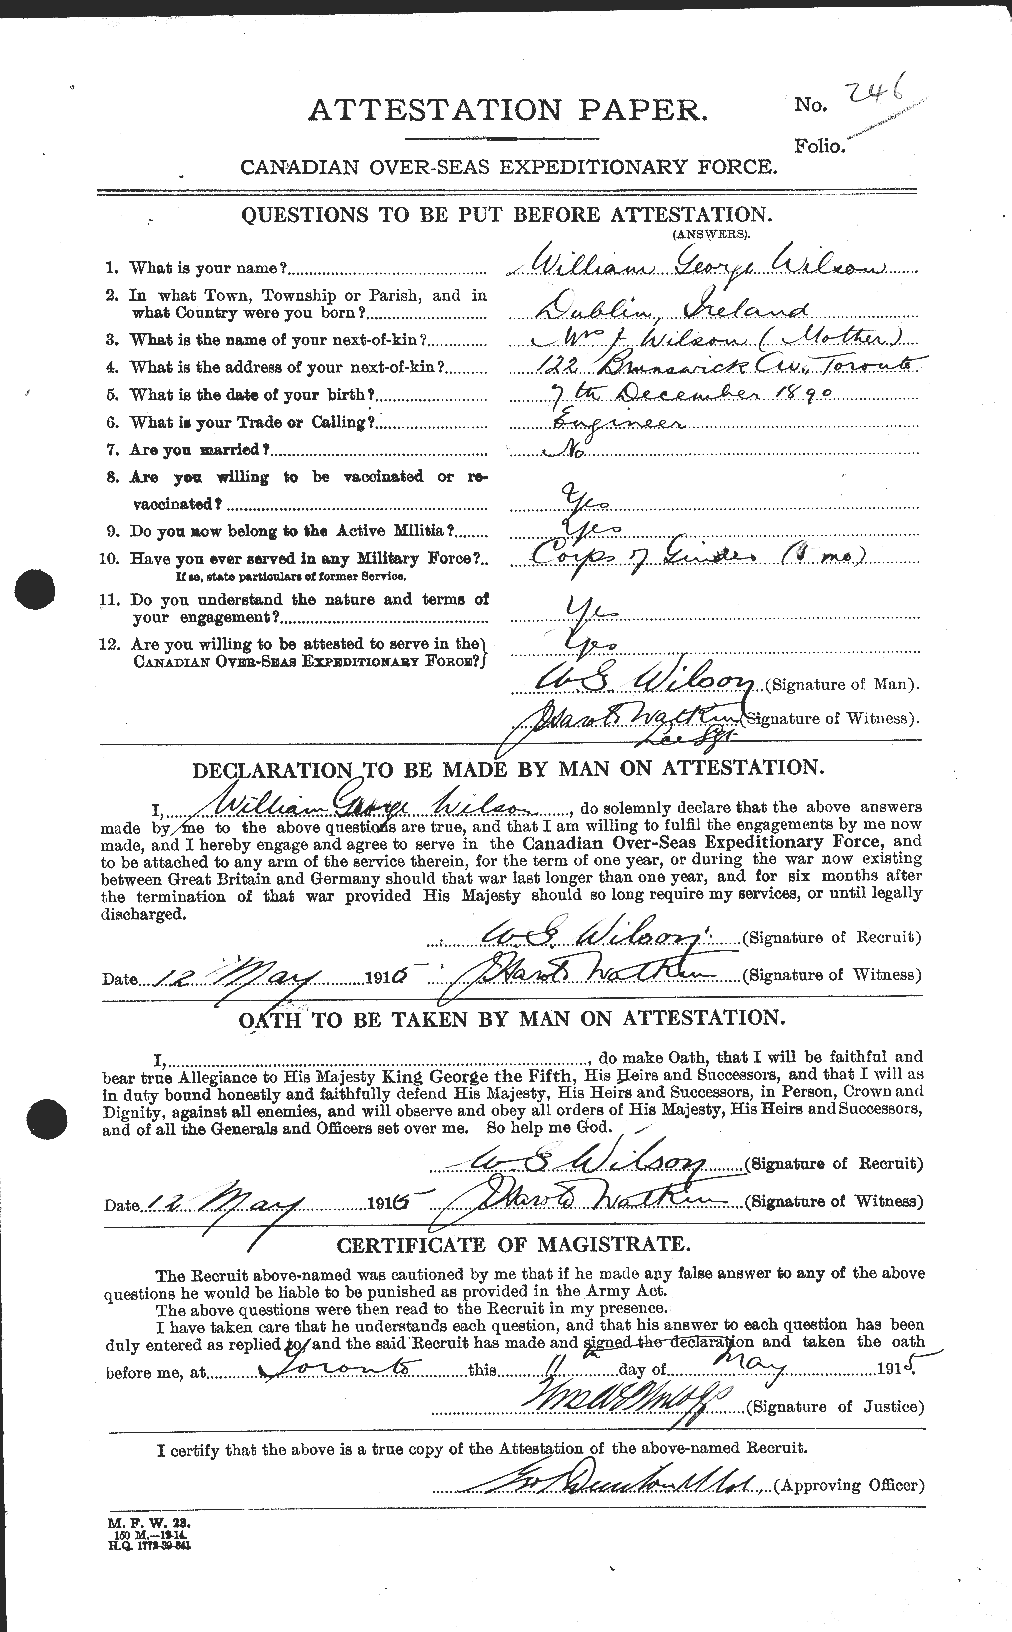 Dossiers du Personnel de la Première Guerre mondiale - CEC 681999a